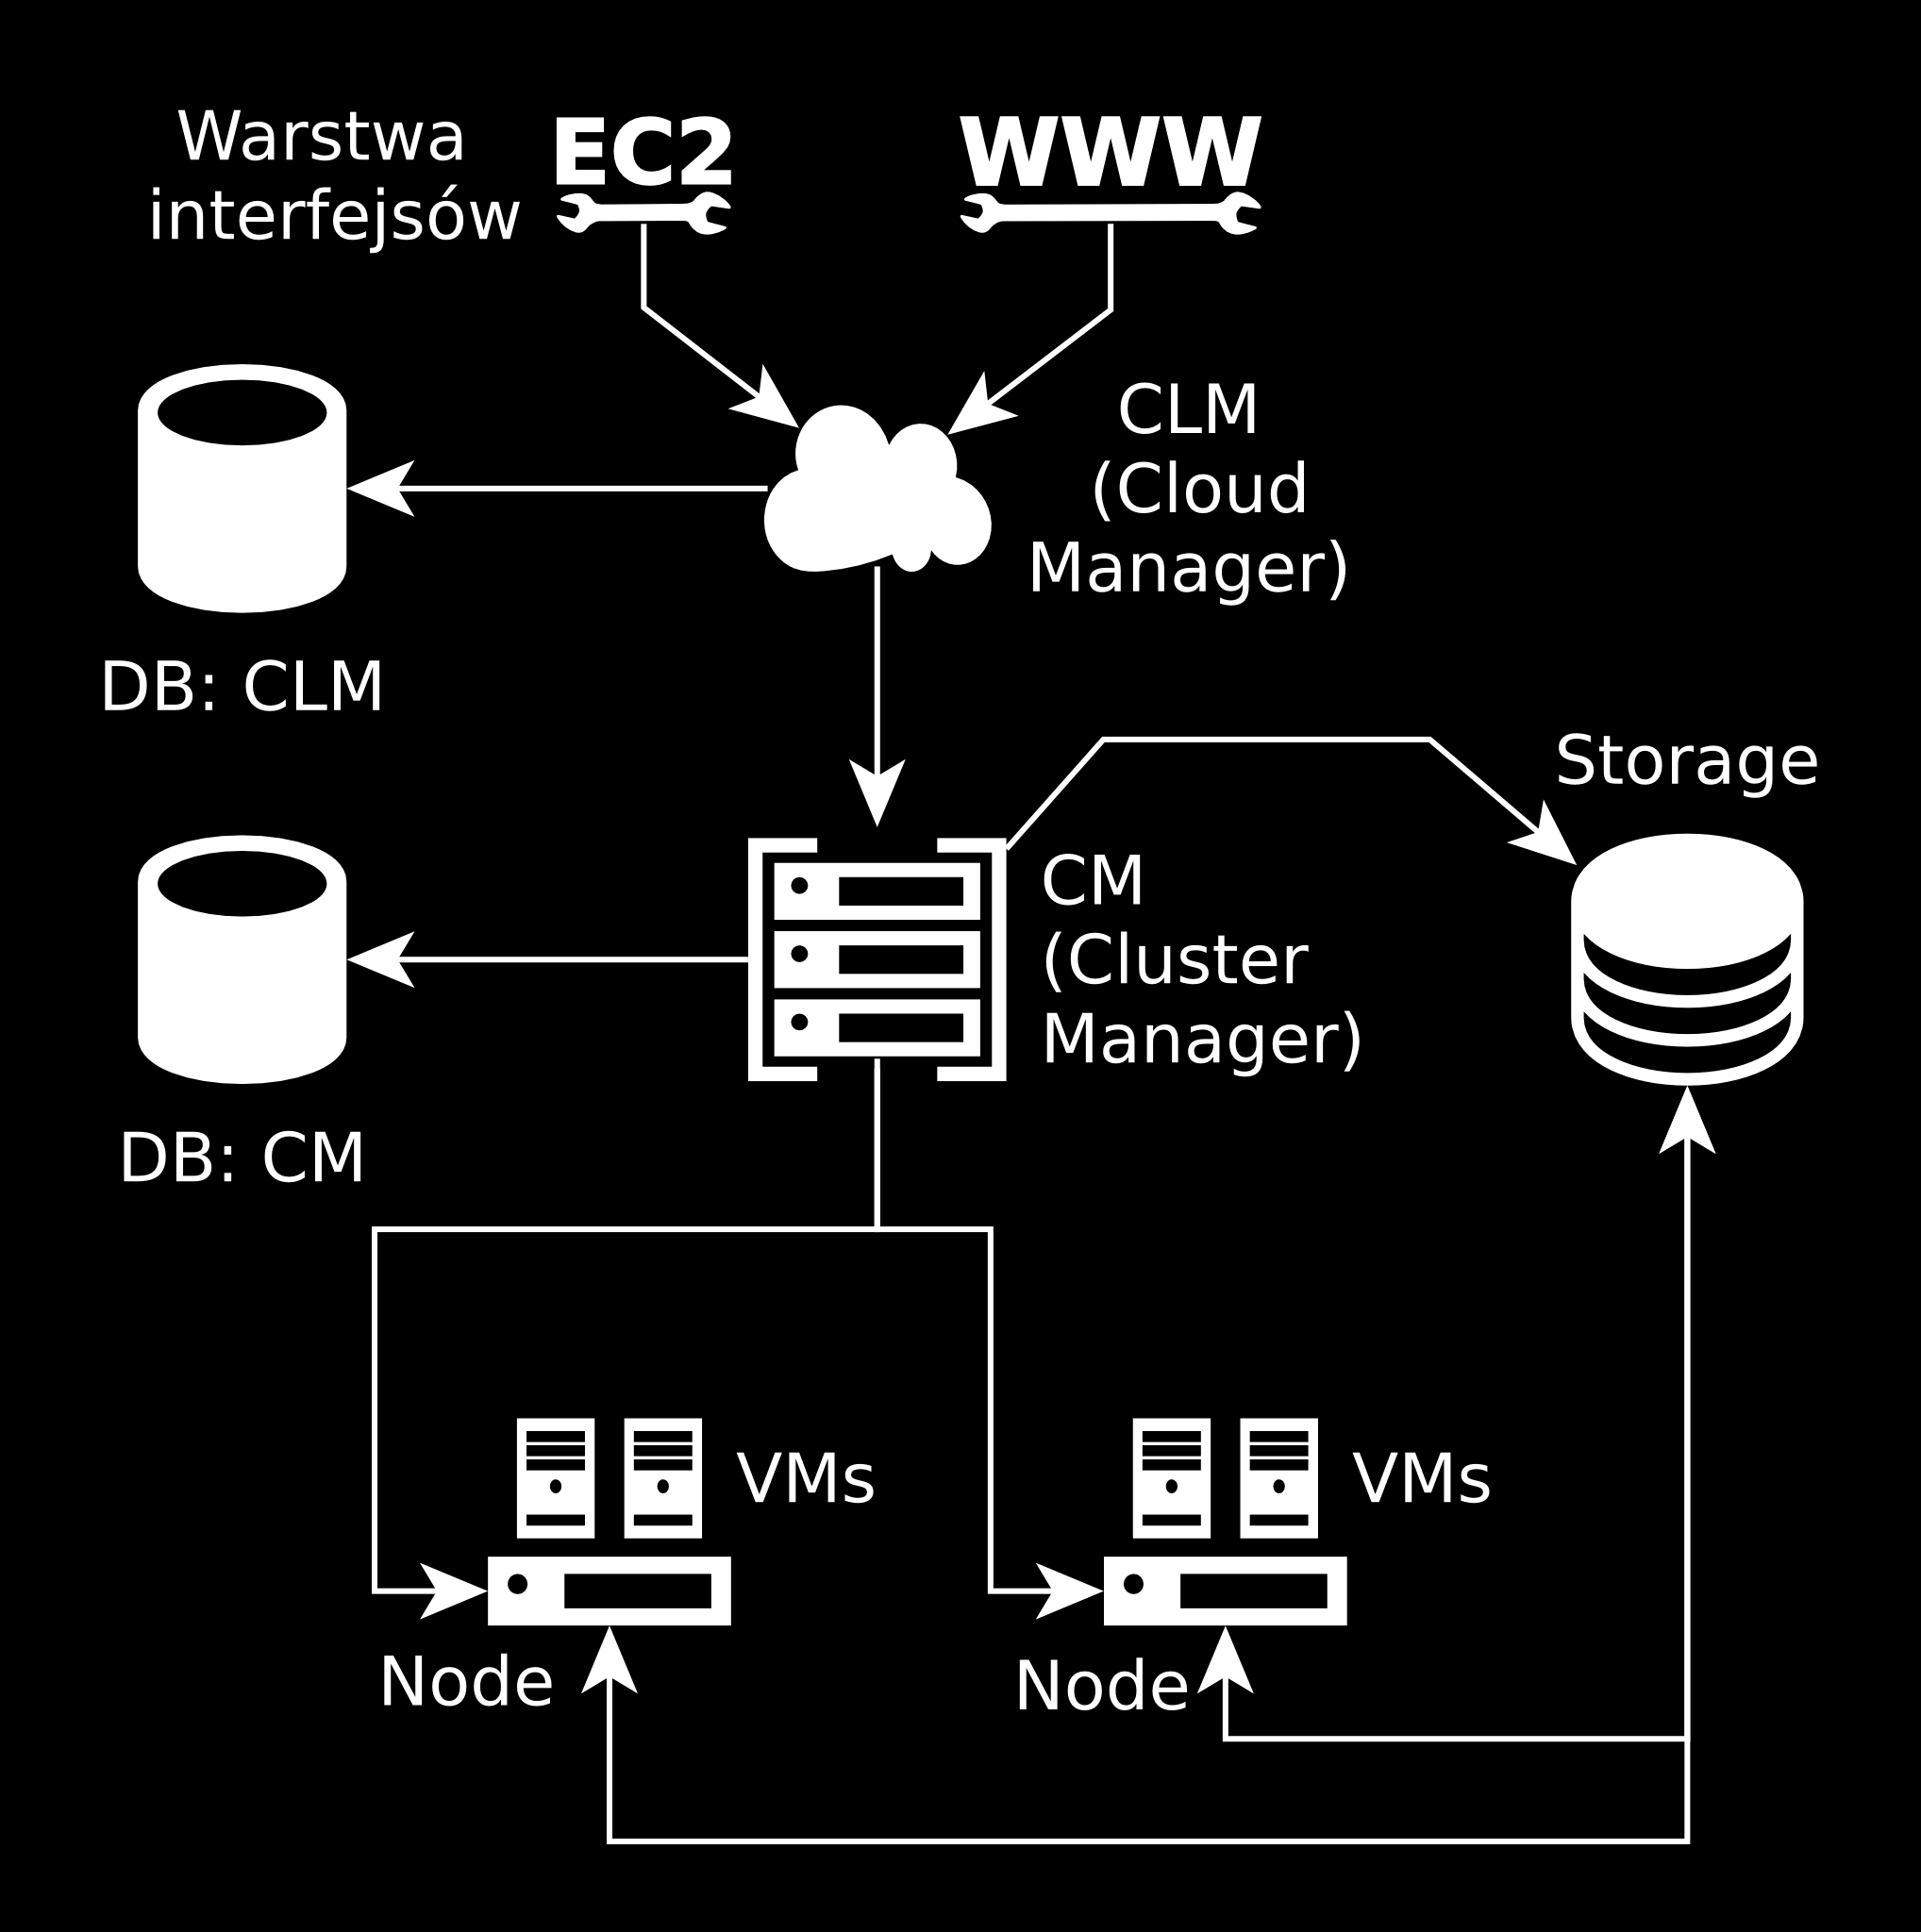 Figure 1.1: Schemat systemu Procedura instalacji opisana zostanie dla interfejsu WI i kontrolerów CLM i CM.